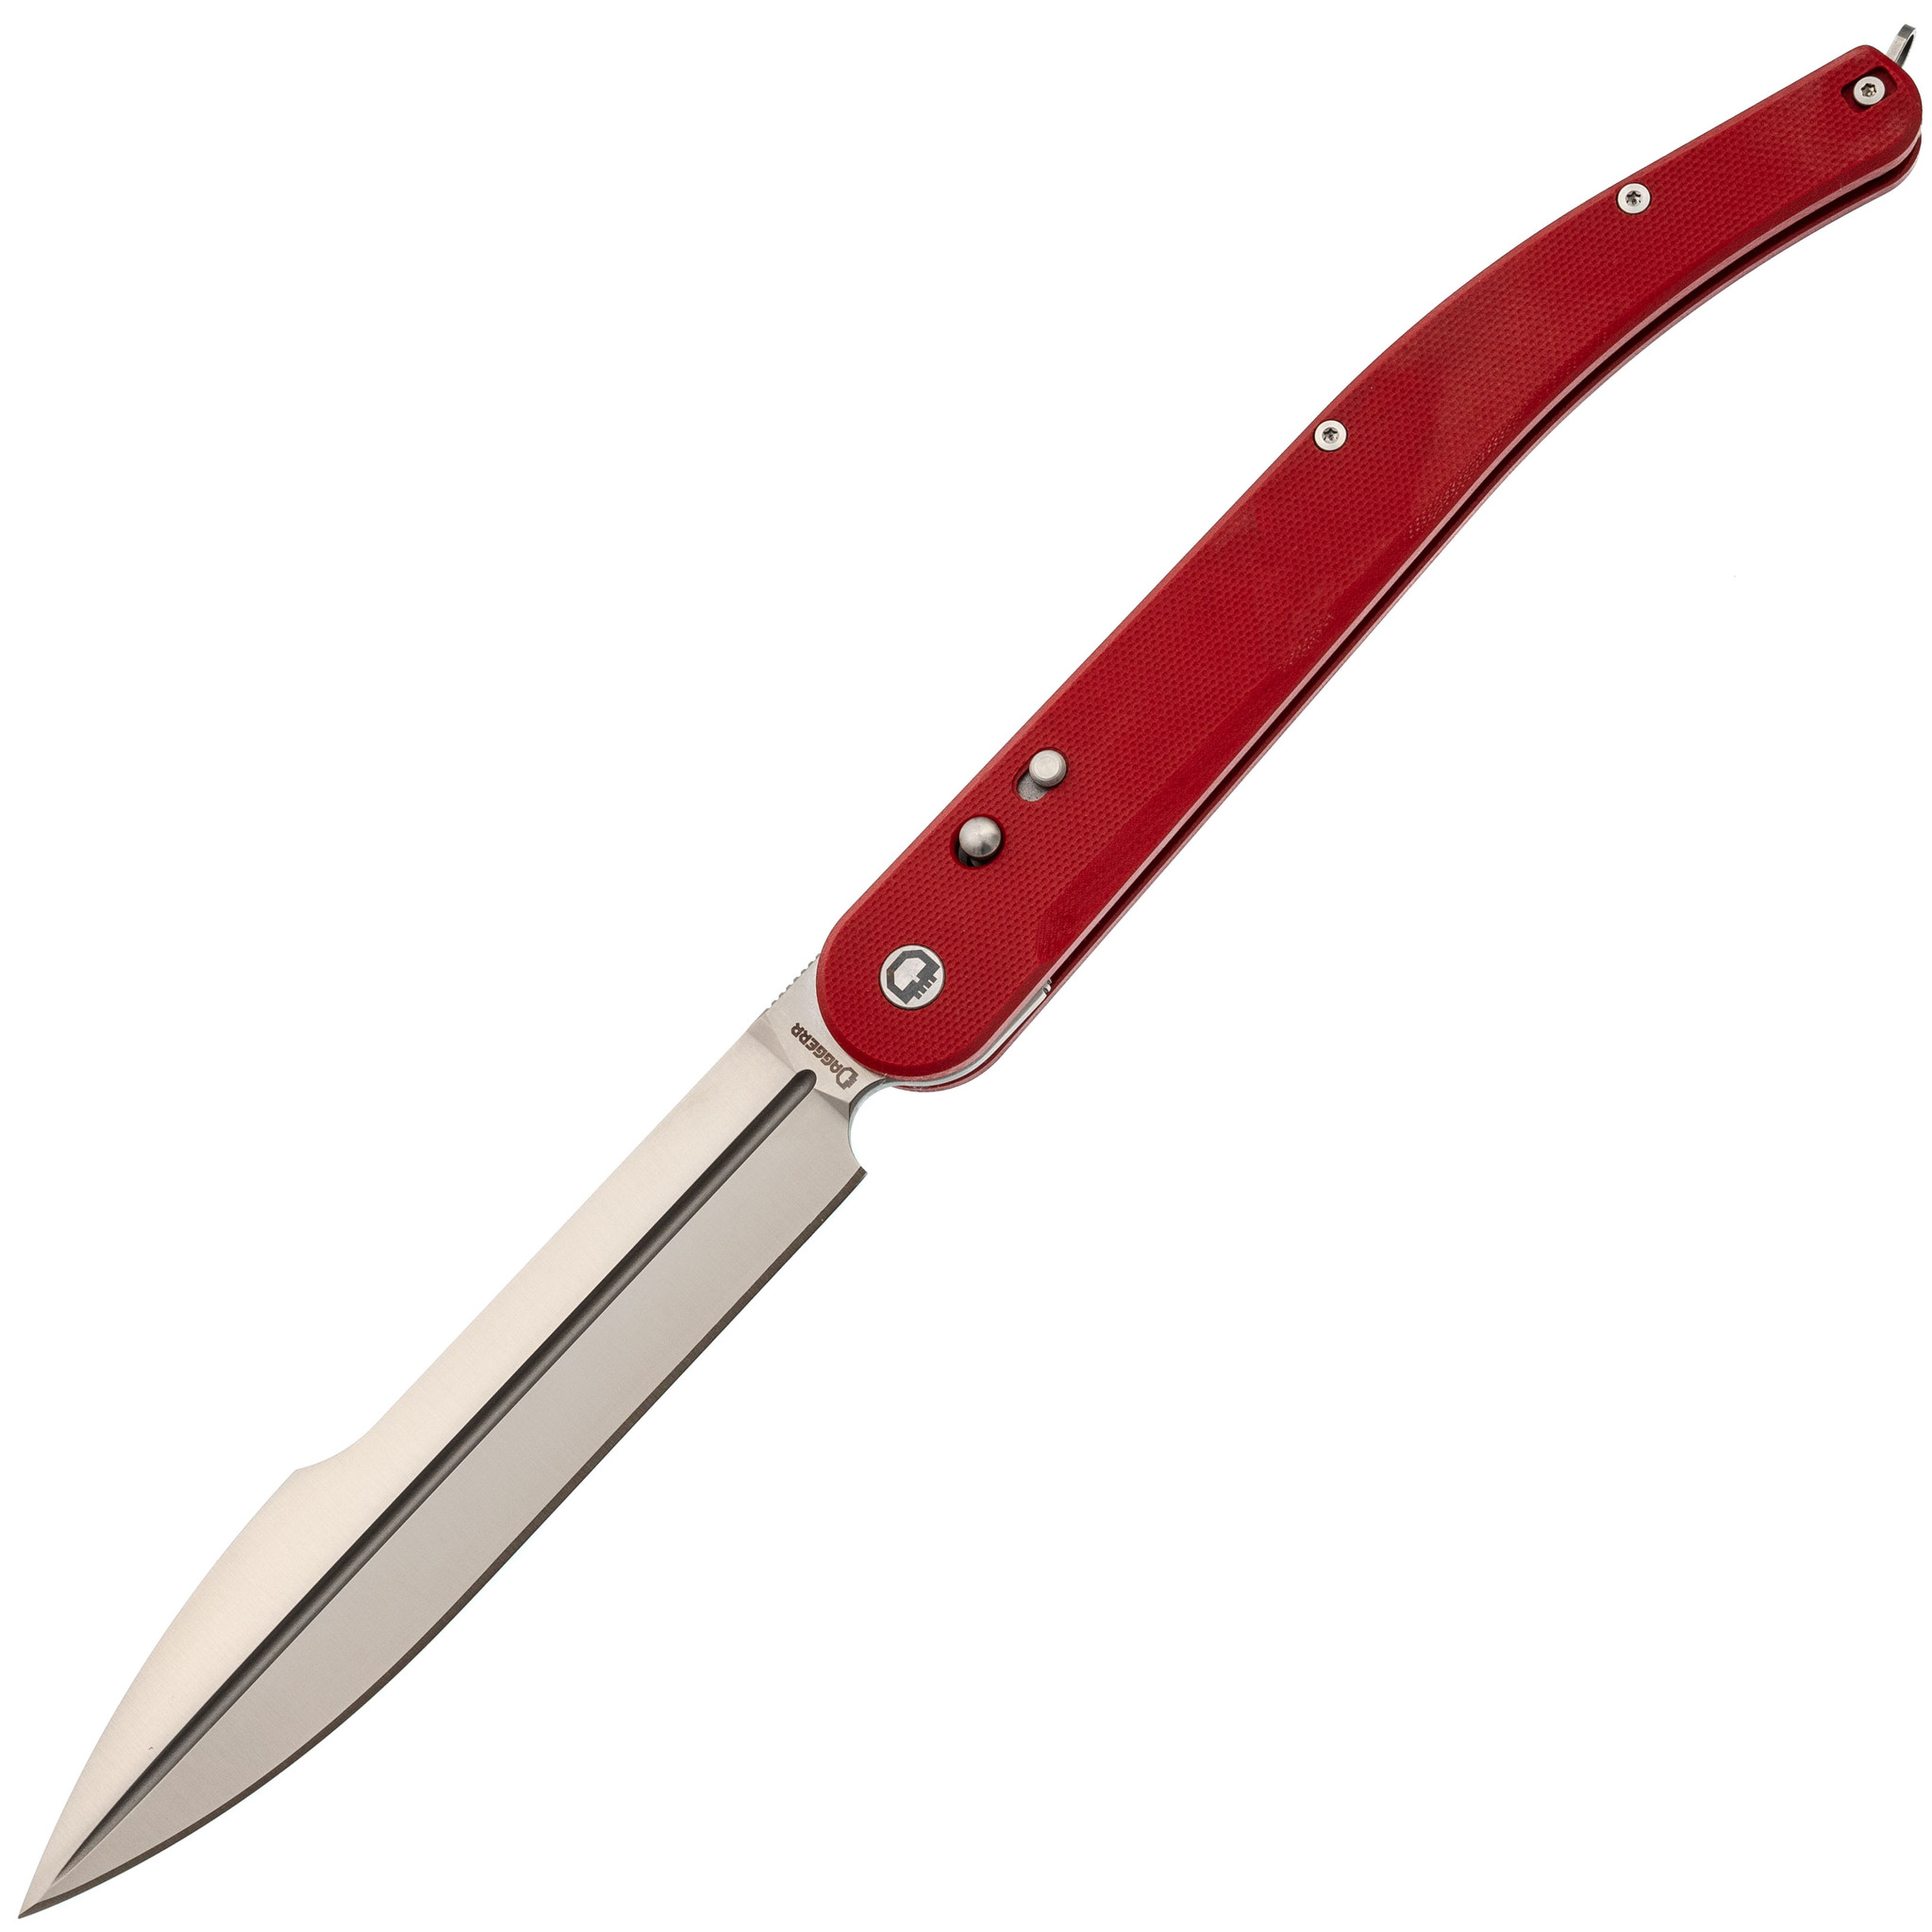 Складной нож Daggerr Navaja De Combate Red, сталь VG-10, рукоять G10 складной нож автоматический hogue ex 04 wharncliffe сталь 154cm рукоять стеклотекстолит g mascus®